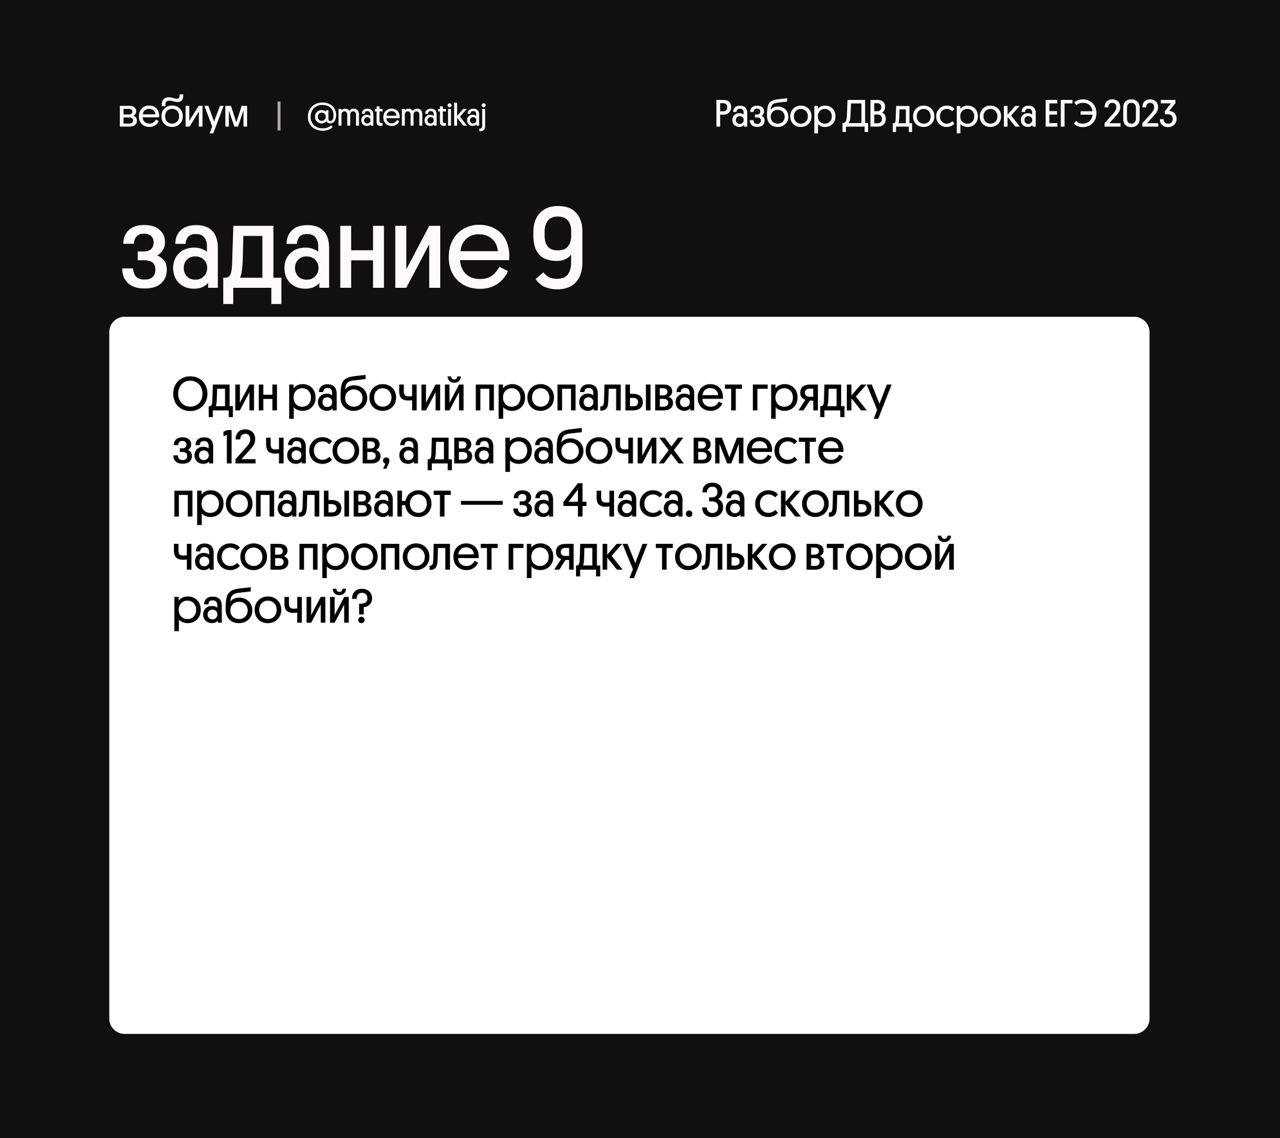 Скачать новый тик ток на андроид 2023 через телеграмм бесплатно русском фото 90